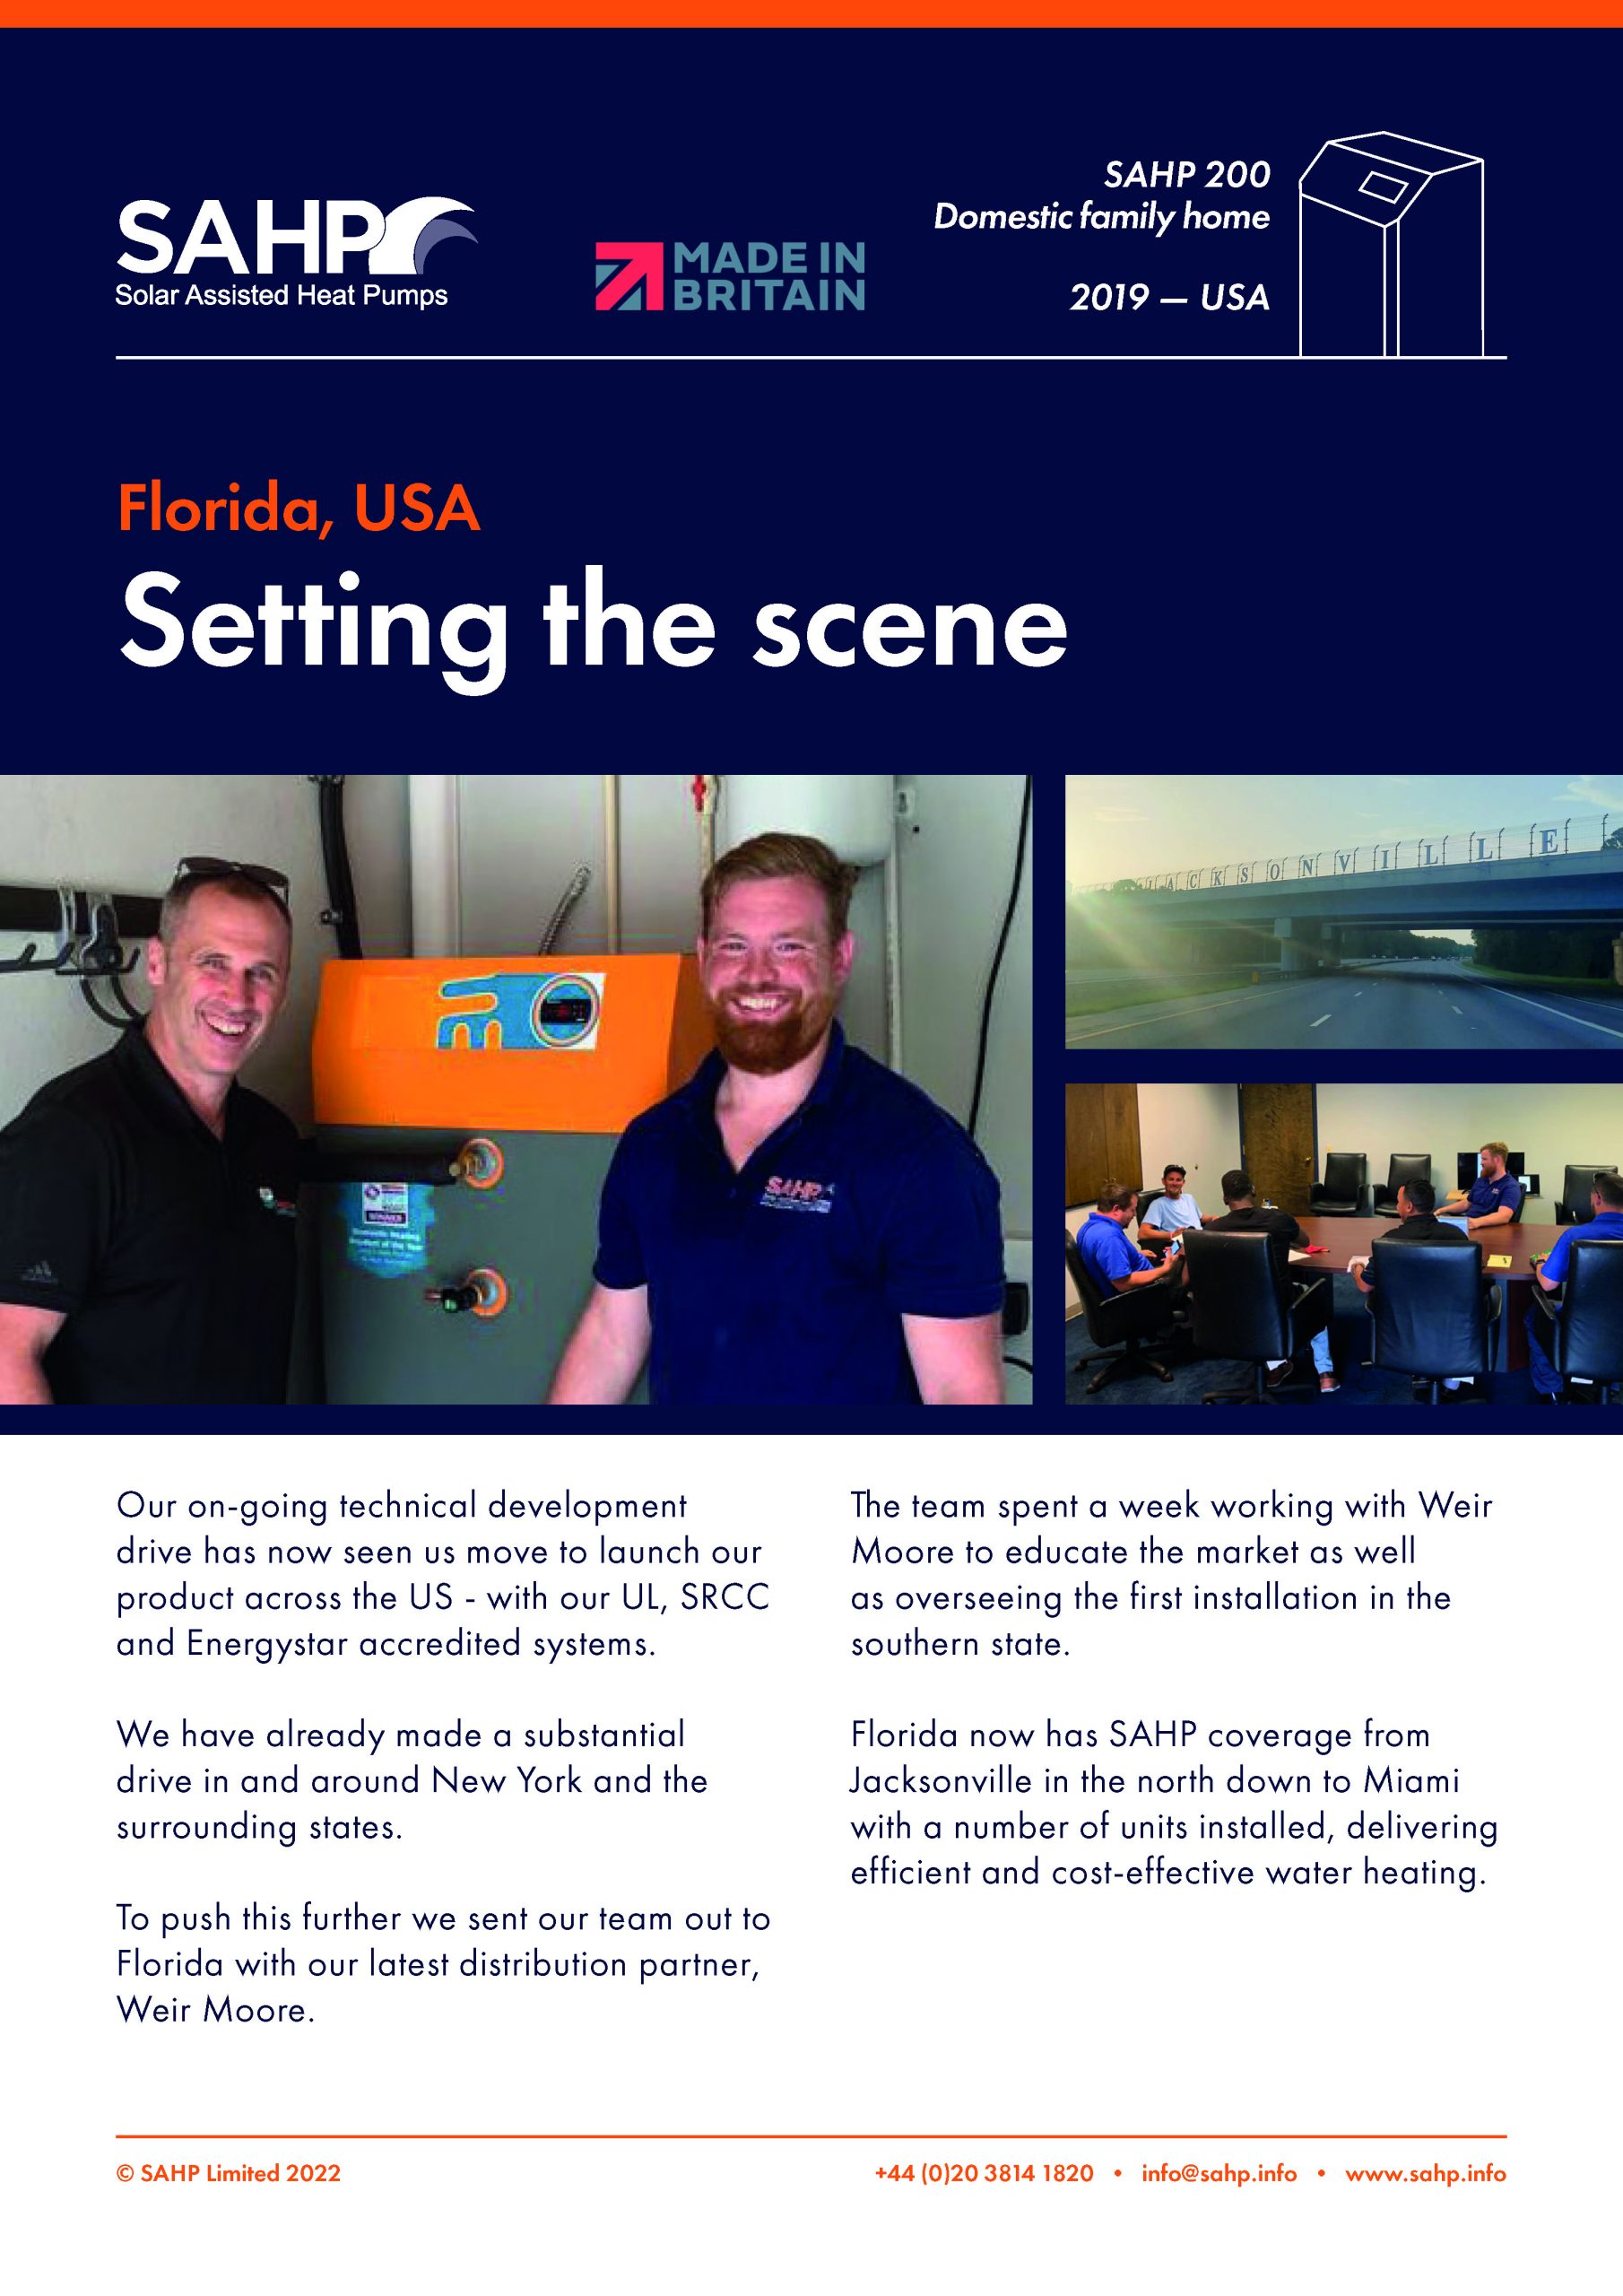 SAHP Feature sheet — Florida USA